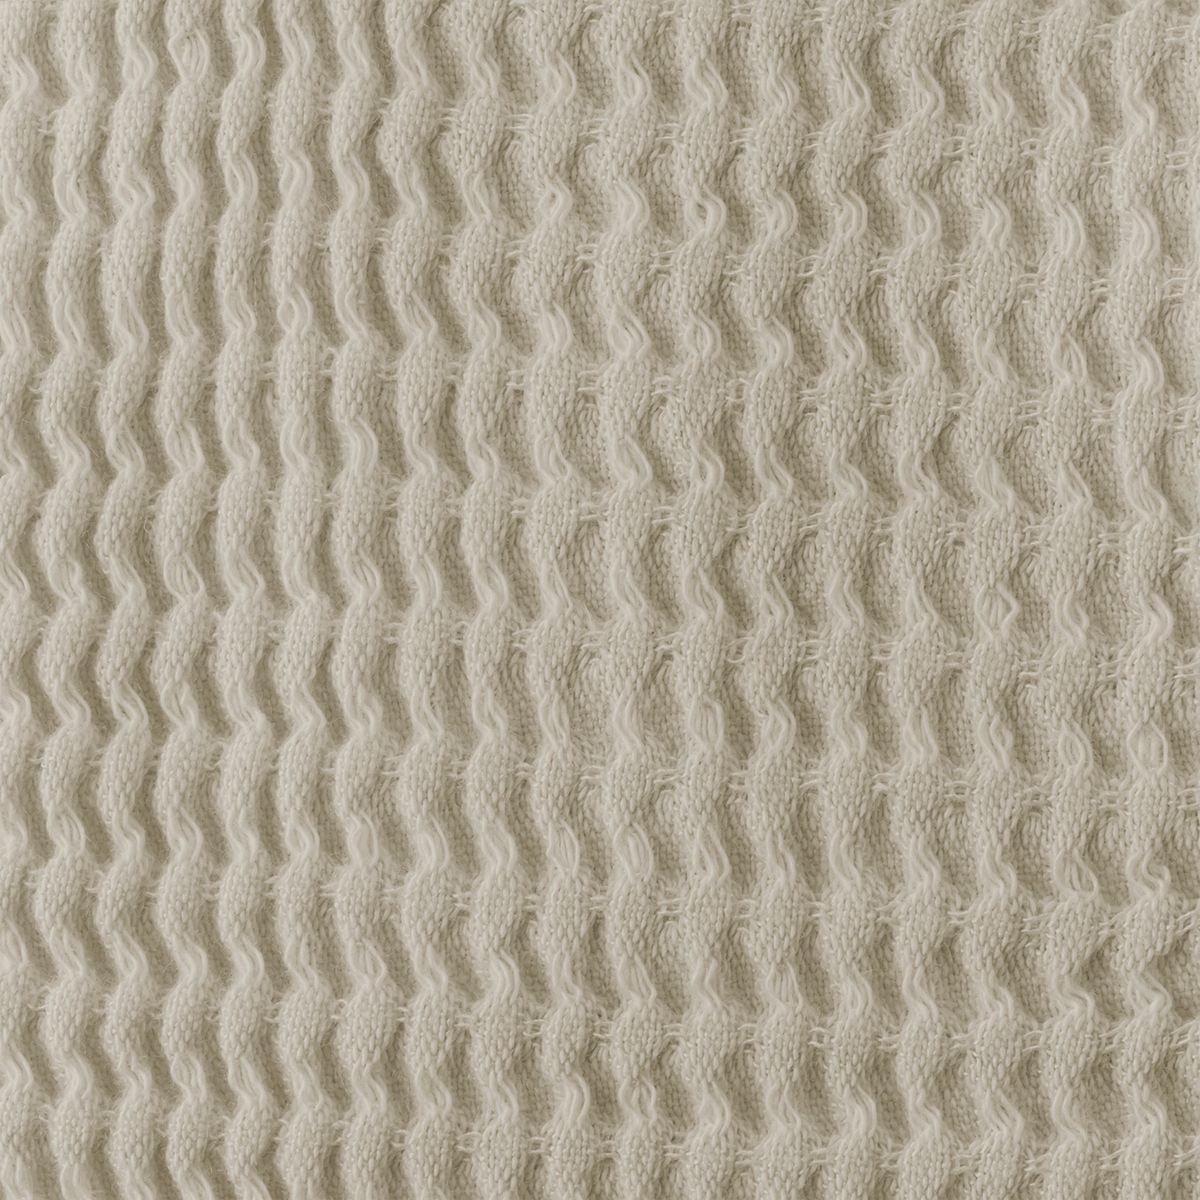 Swatch Sample of Matouk Kiran Waffle Towels in Dune Color